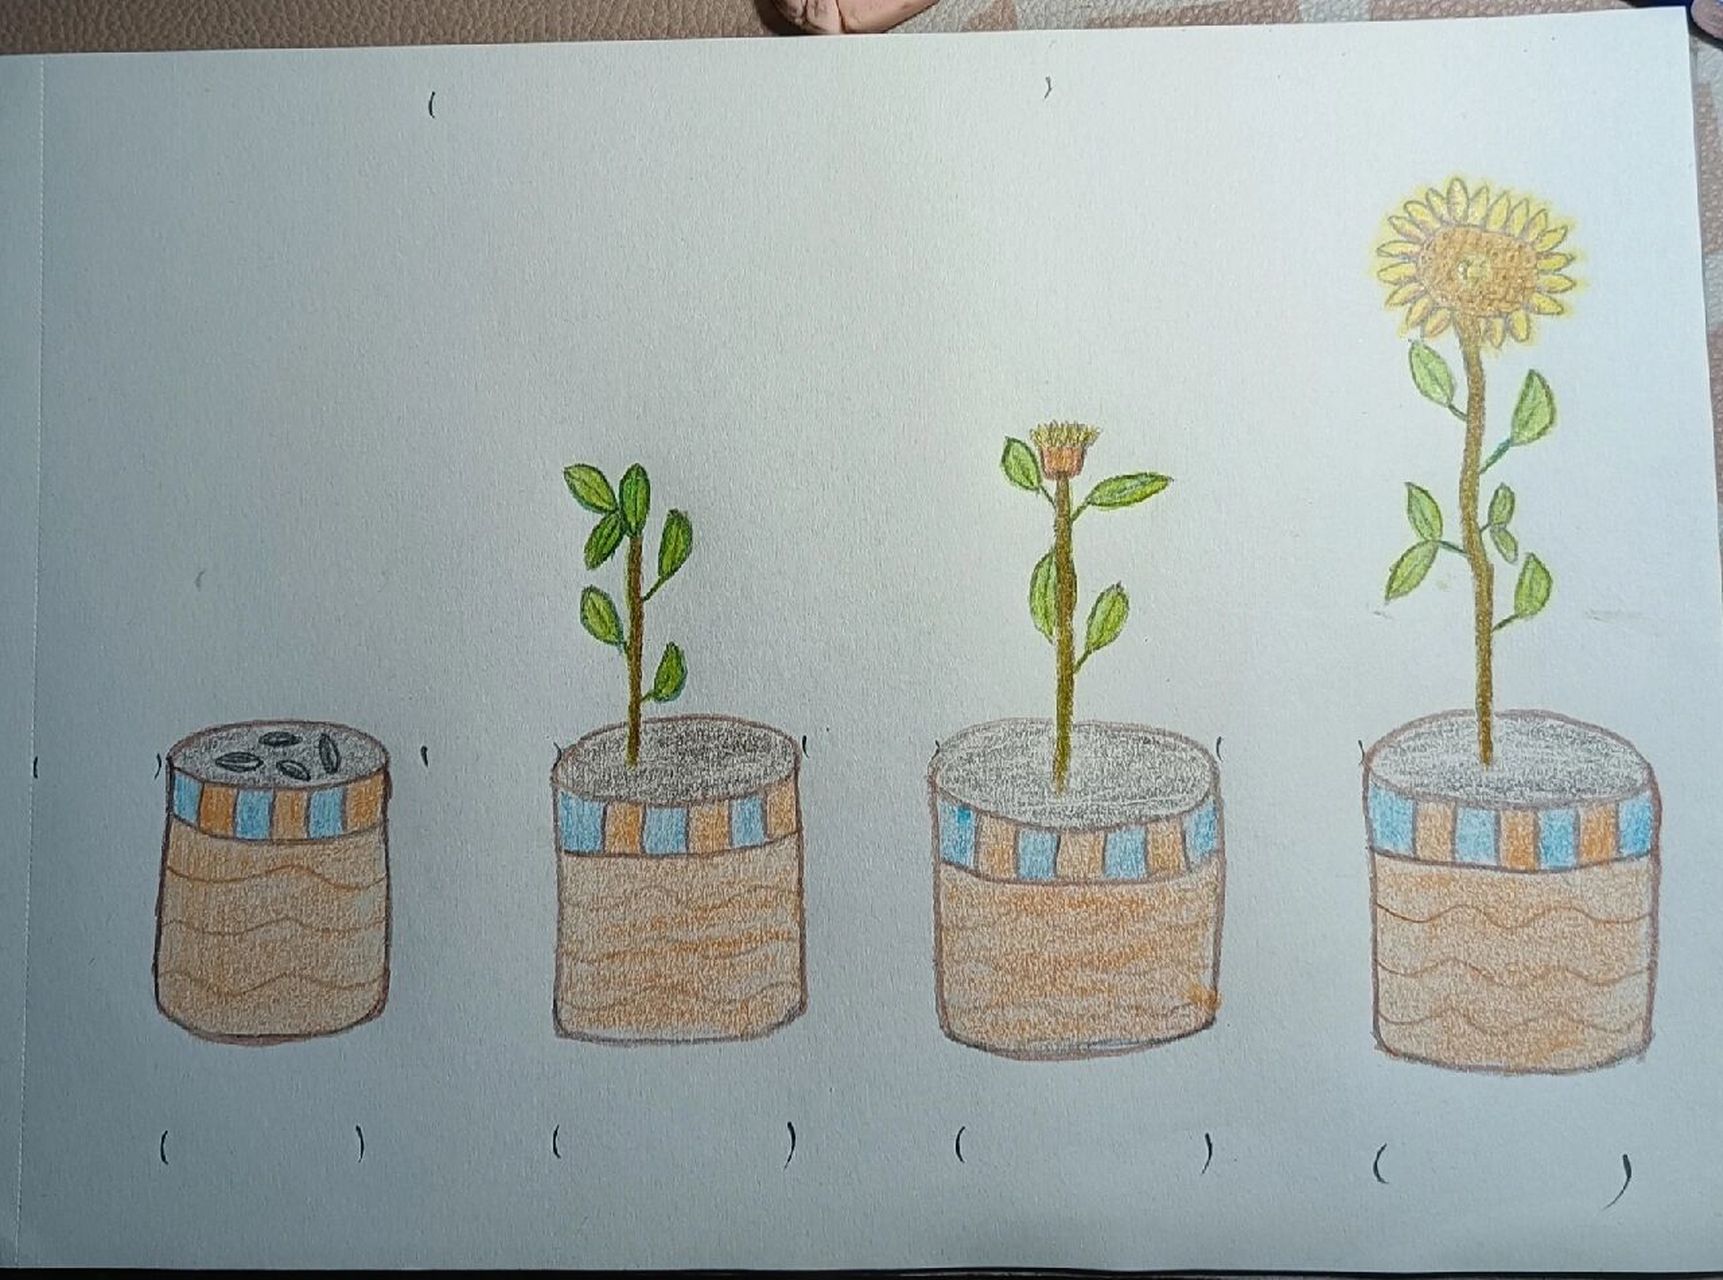 97向日葵的生长周期 小学作业～手绘97向日葵生长周期 向日葵的